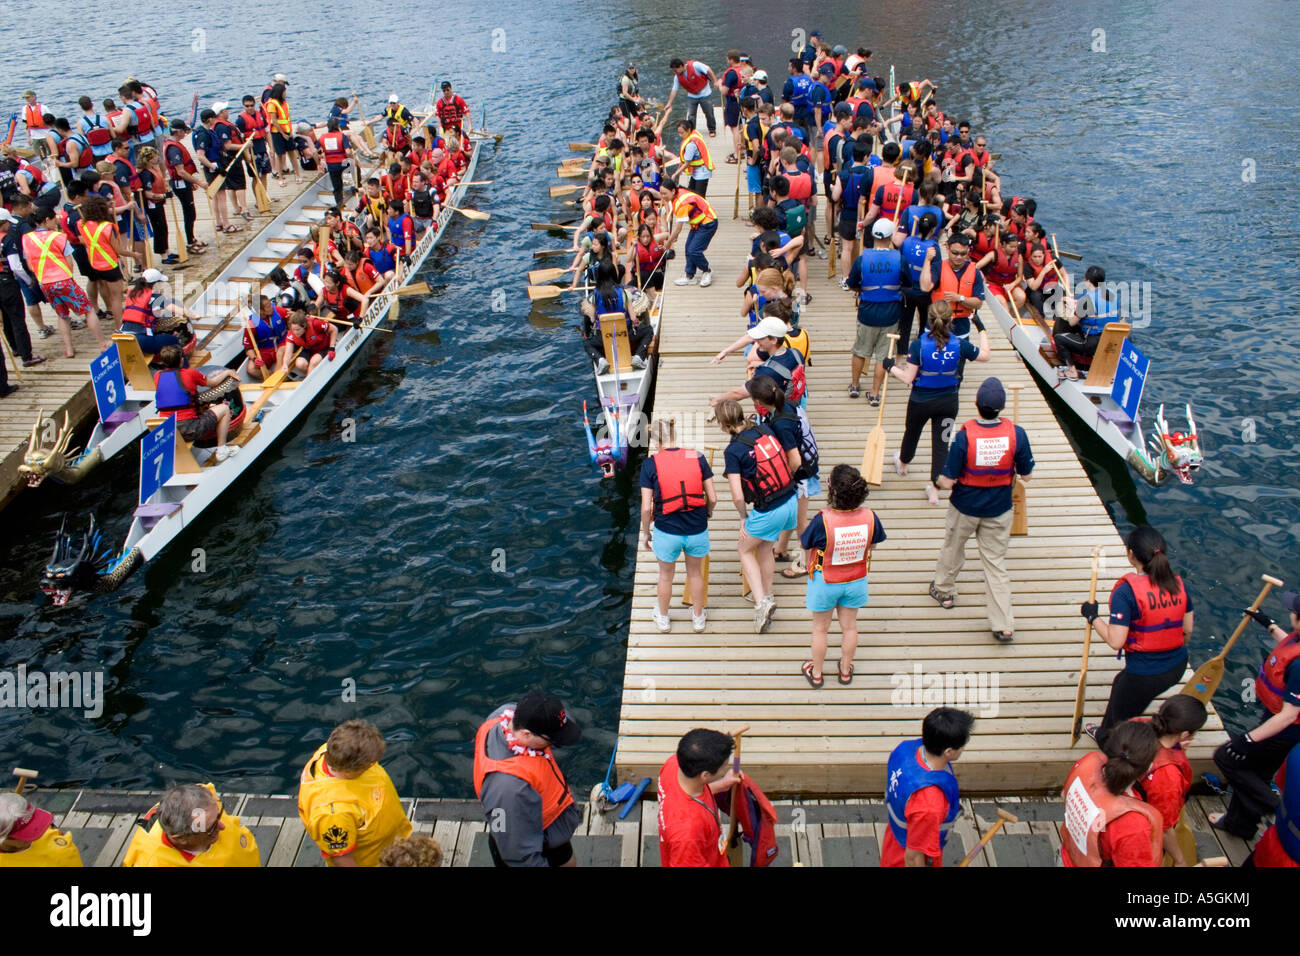 Dragon Boat Festival, Vancouver, BC, Canada Stock Photo